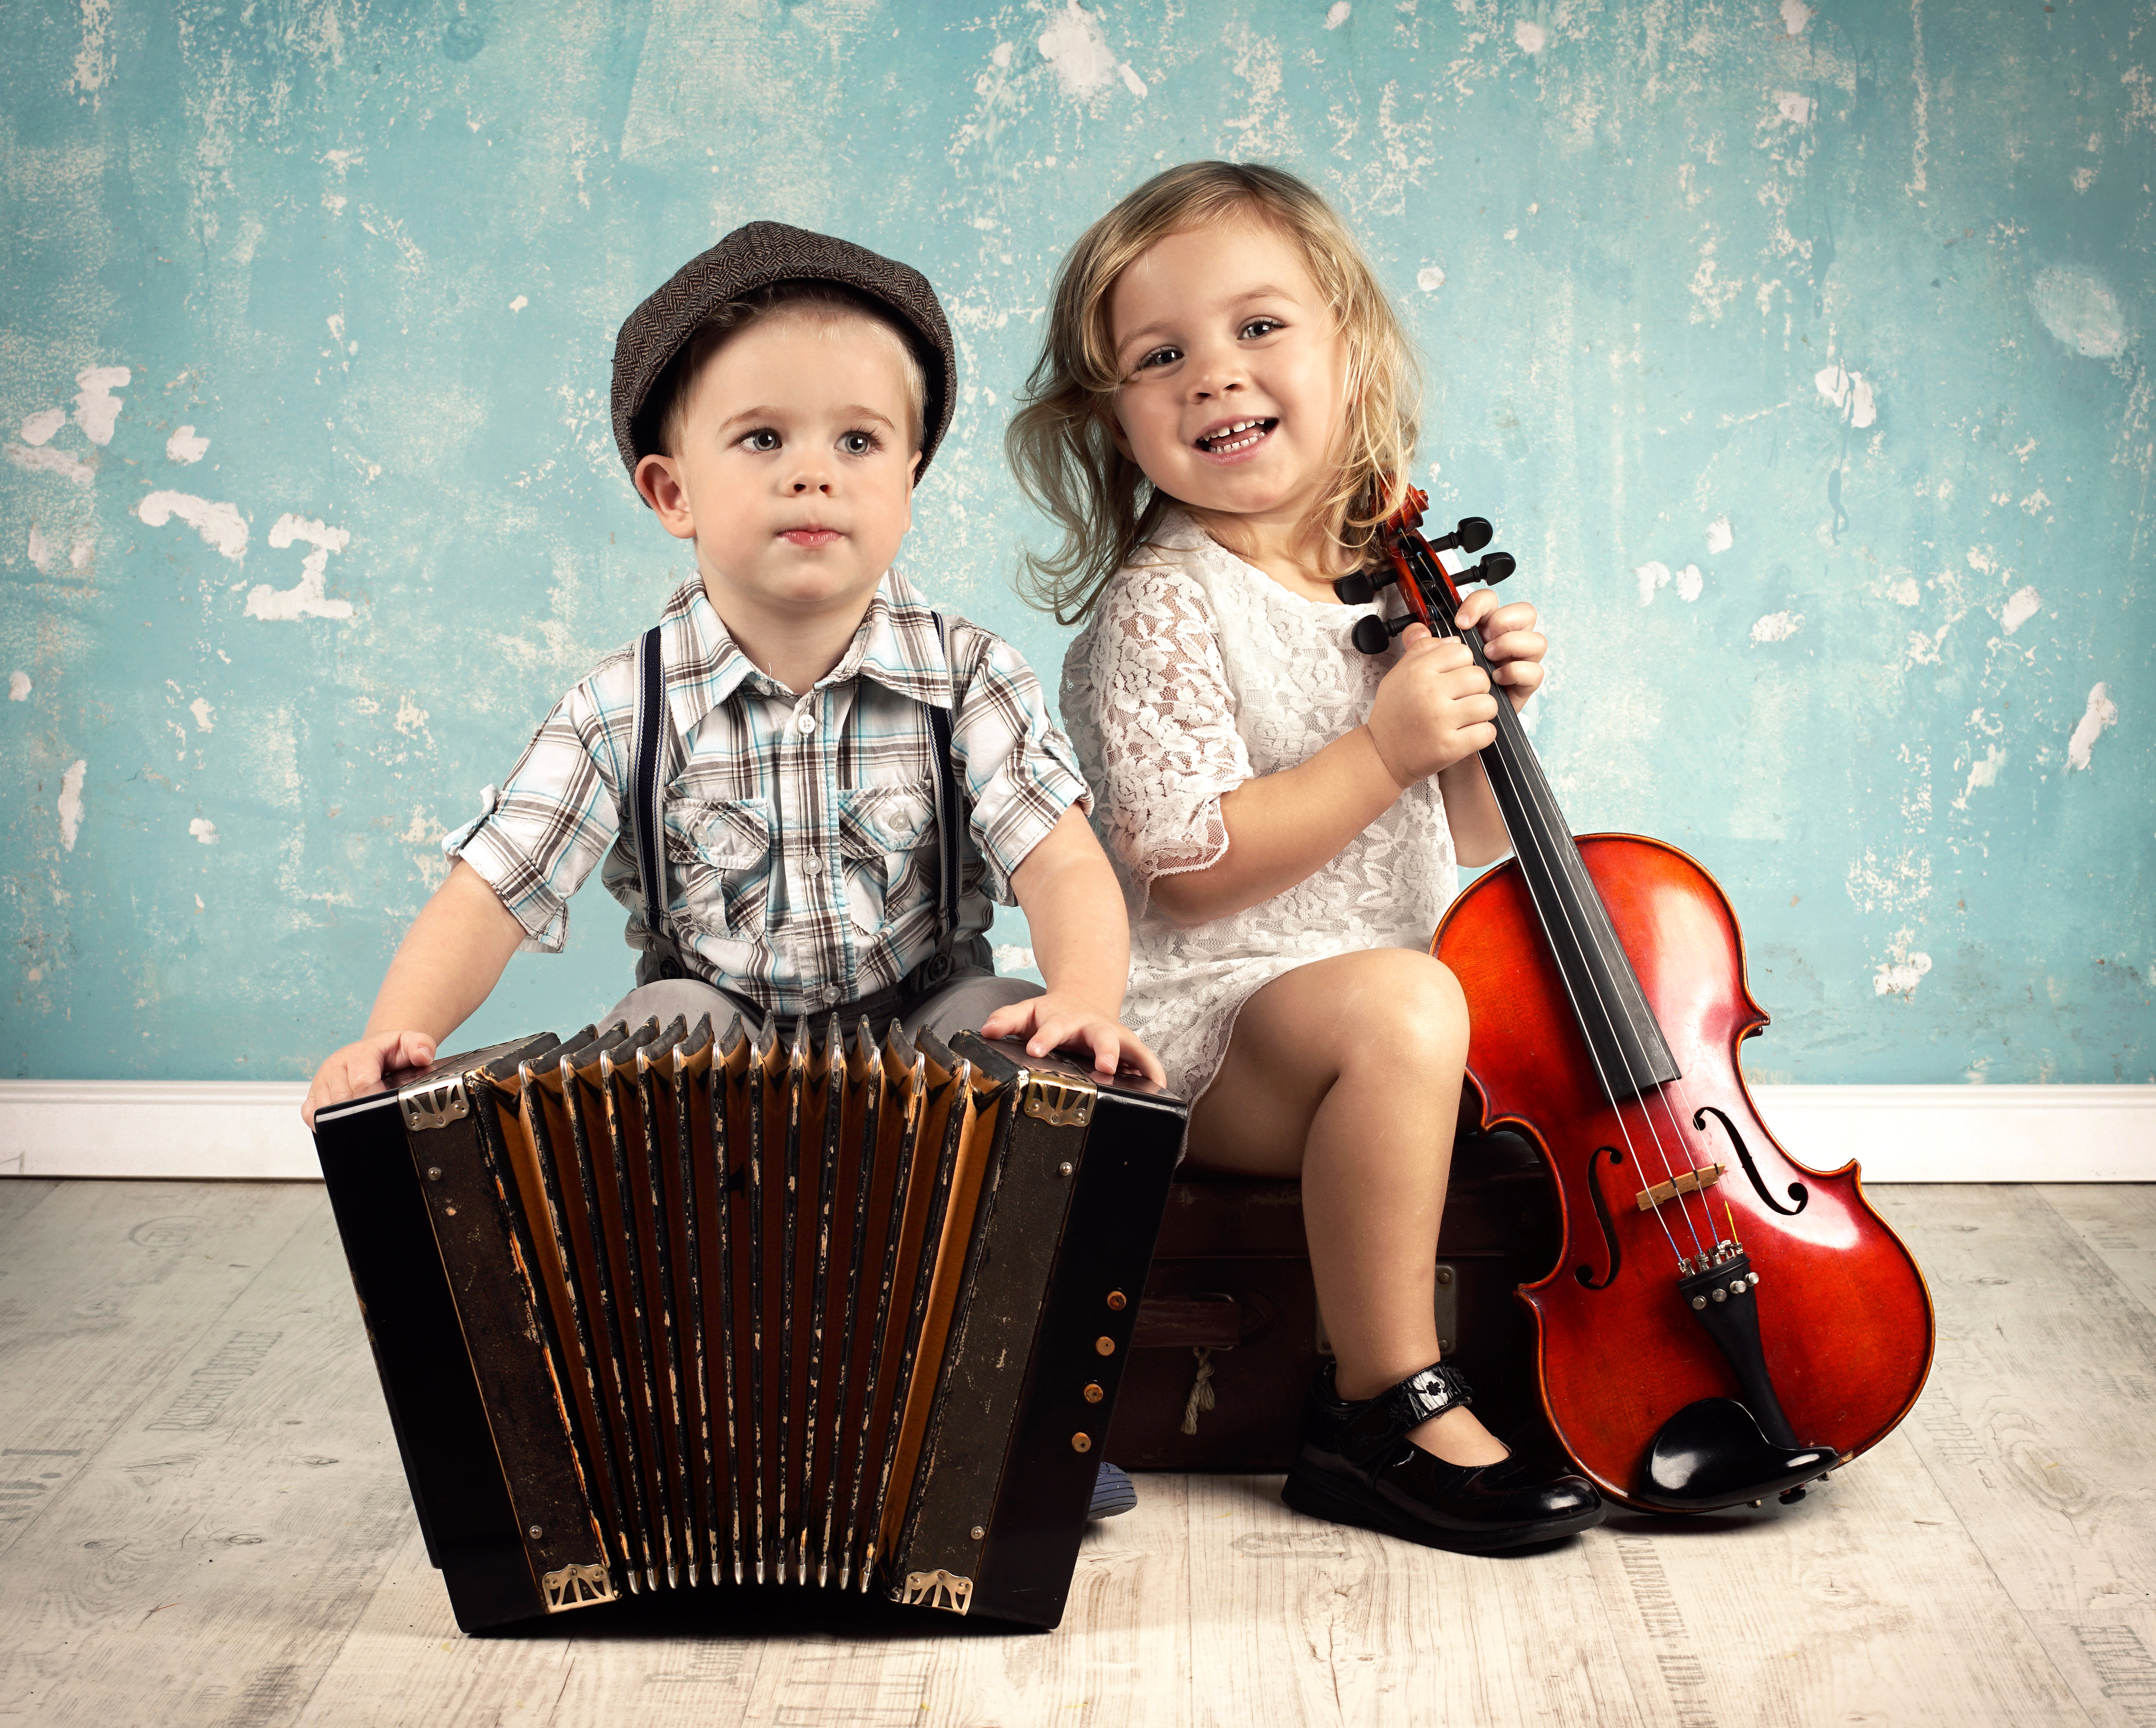 Песня дети поют маленькие. Дети музыканты. Музыкальные инструменты для детей. Музыкальные способности детей. Дети на музыкальном занятии.